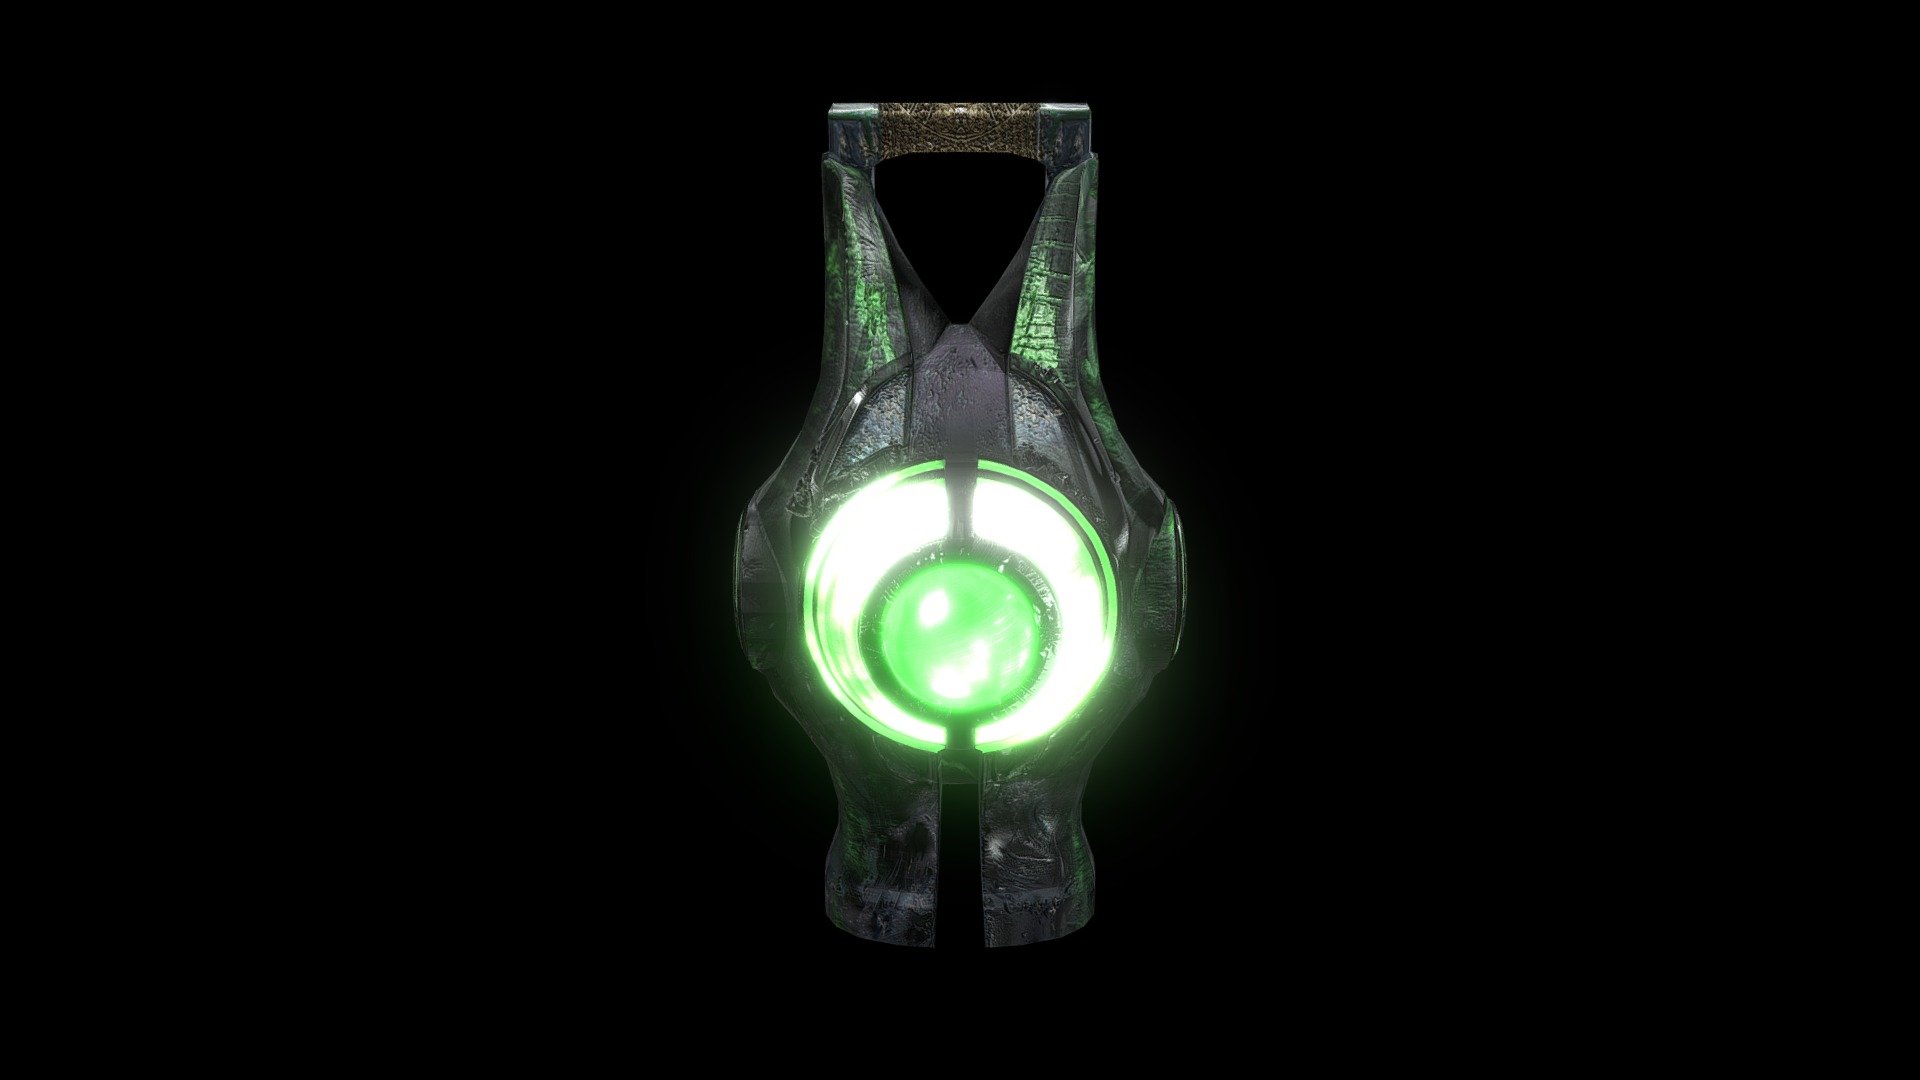 Power battery modeled in maya 2016 - Green Lantern Movie Power Battery - 3D model by Wil (@fapaknight) 3d model